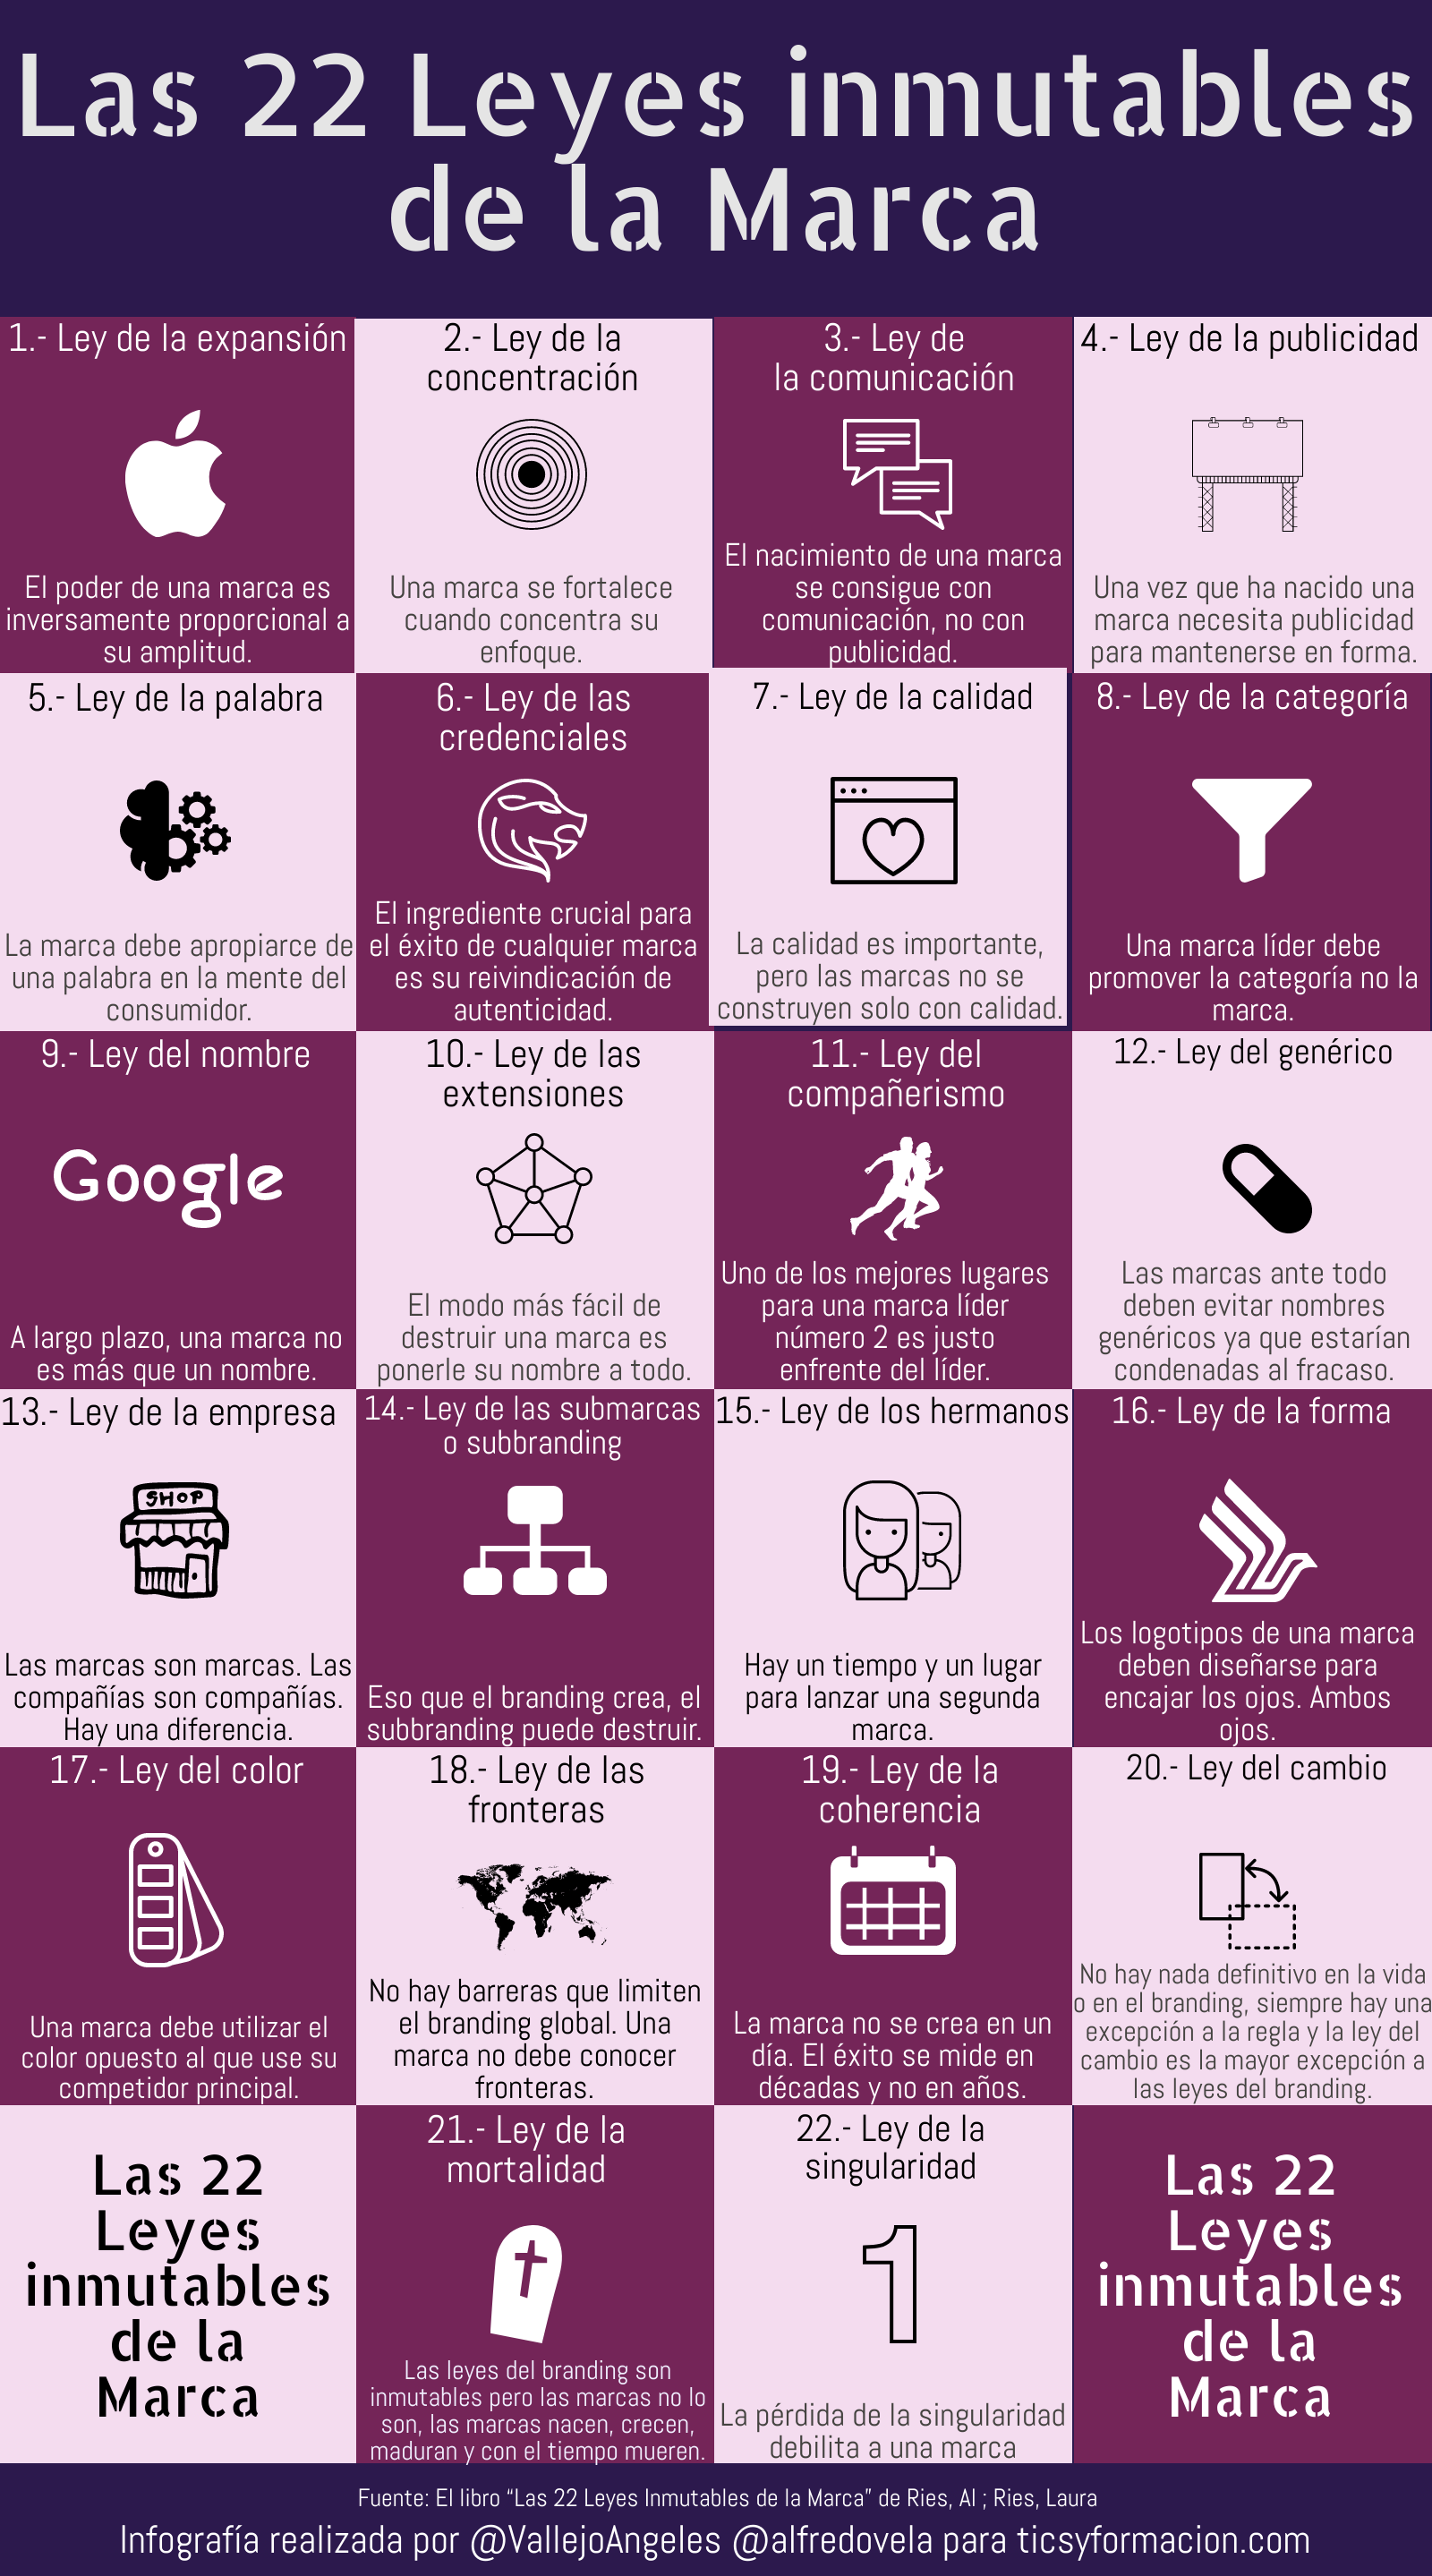 Las 22 leyes inmutables de la Marca #infografia #branding #marketing